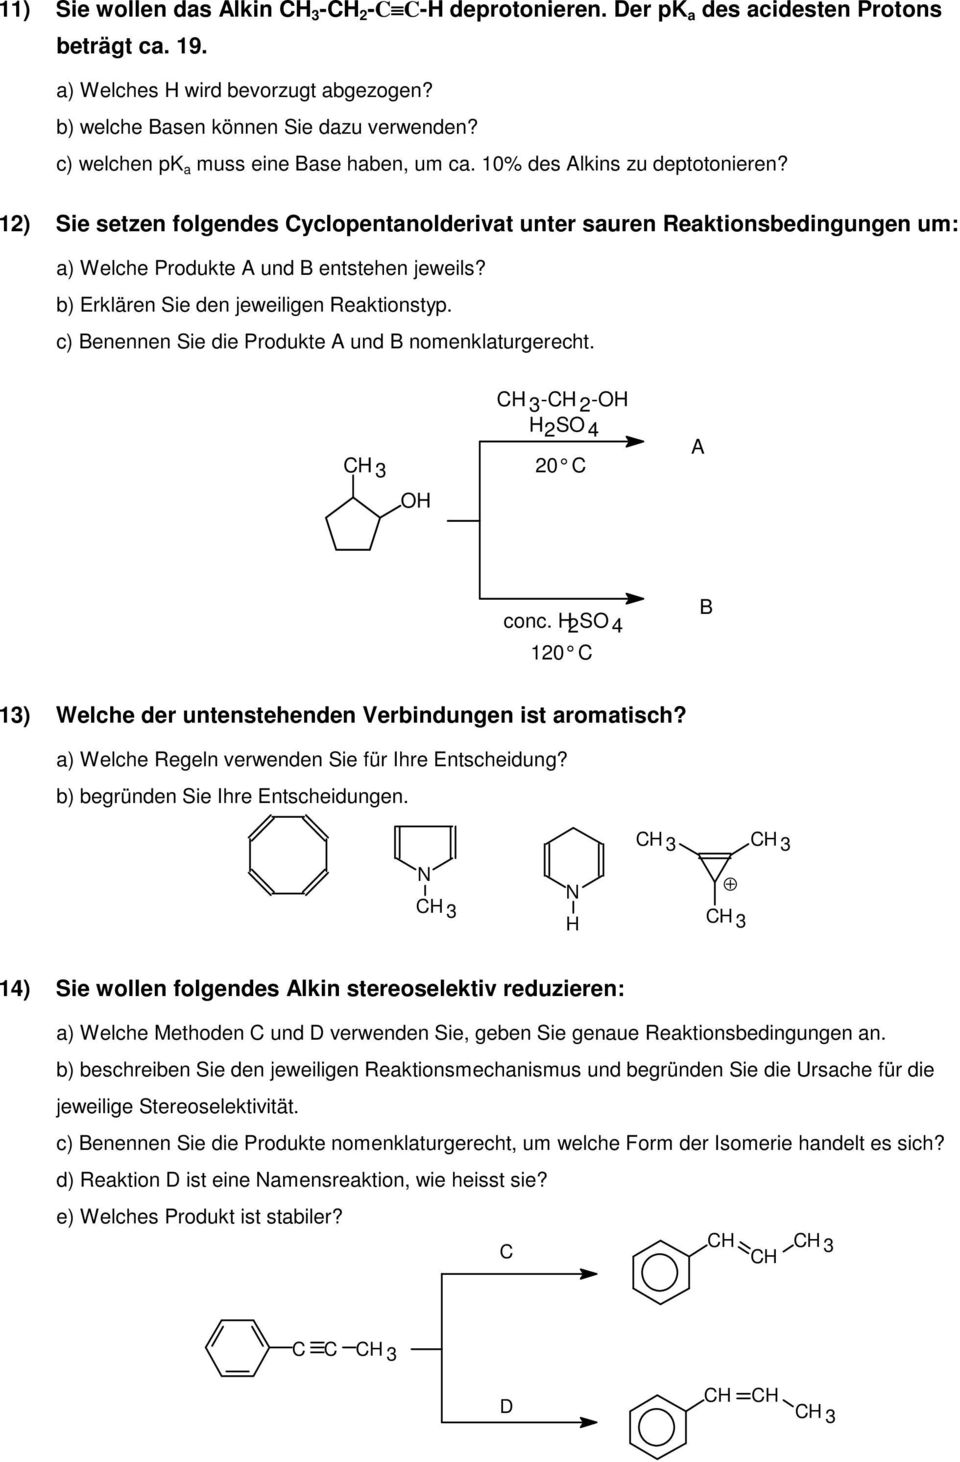 12) Sie setzen folgendes Cyclopentanolderivat unter sauren Reaktionsbedingungen um: a) Welche Produkte A und B entstehen jeweils? b) Erklären Sie den jeweiligen Reaktionstyp.